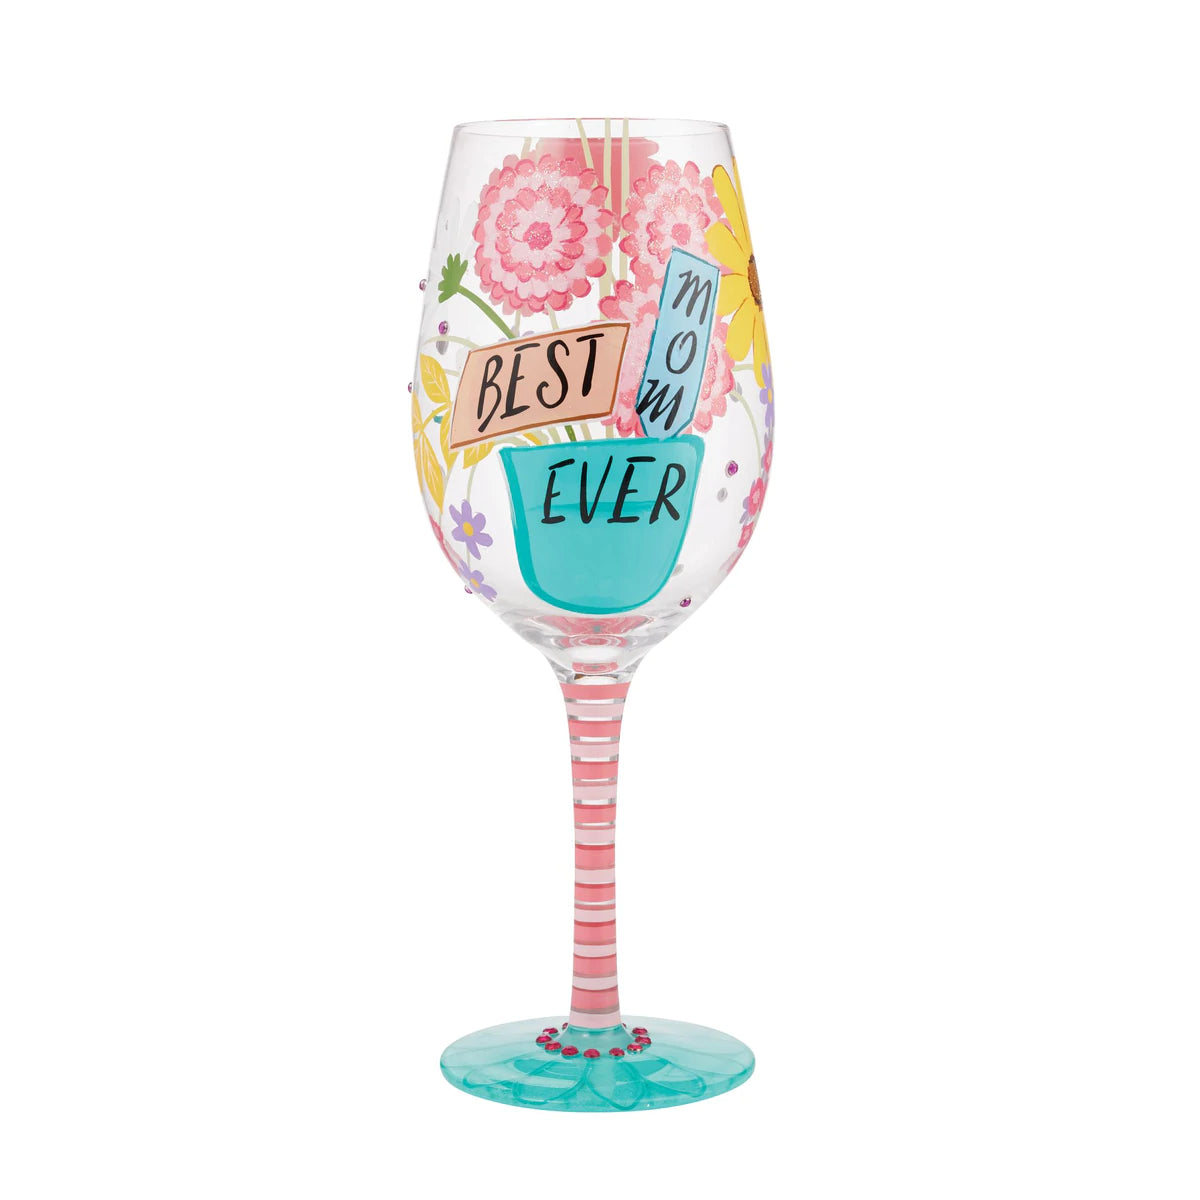 Lolita “Best Mom Ever” Wine Glass